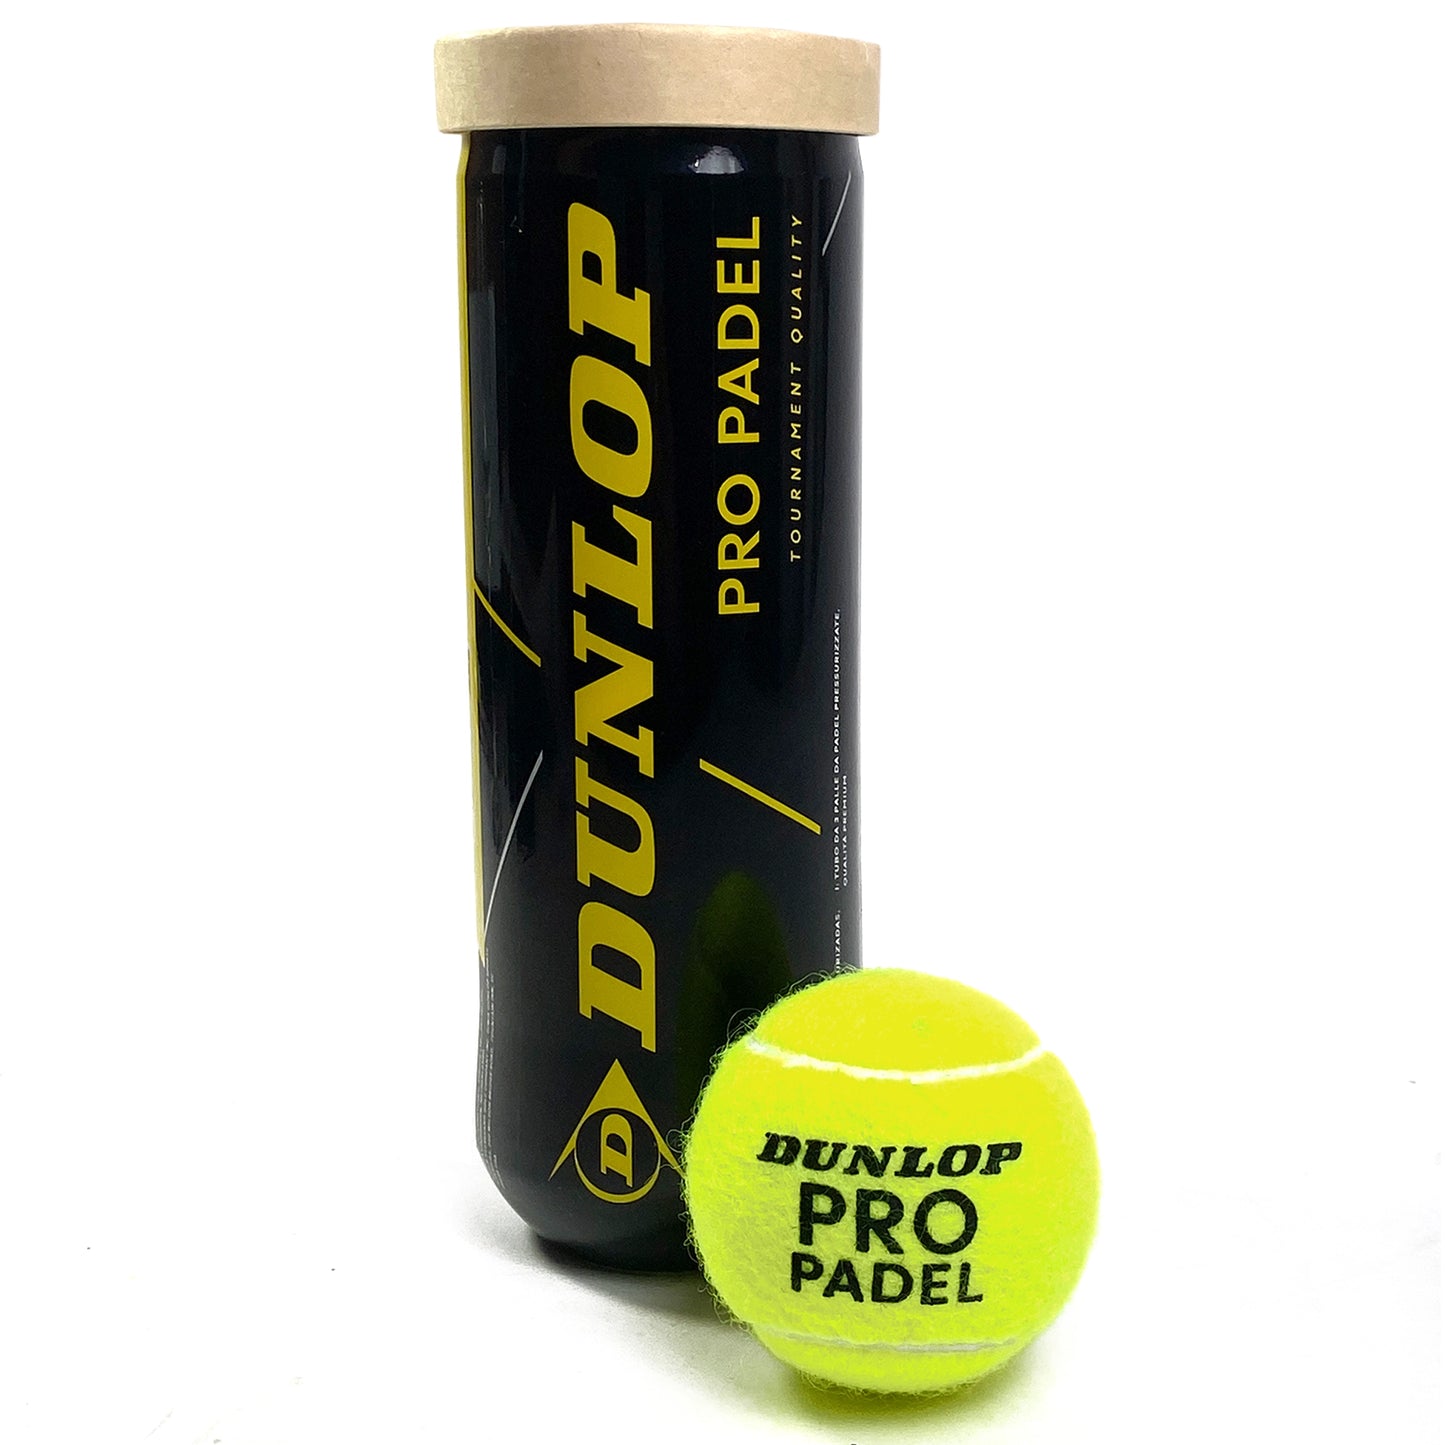 Dunlop Pro Padel Balls - Tube of 3 (601552)